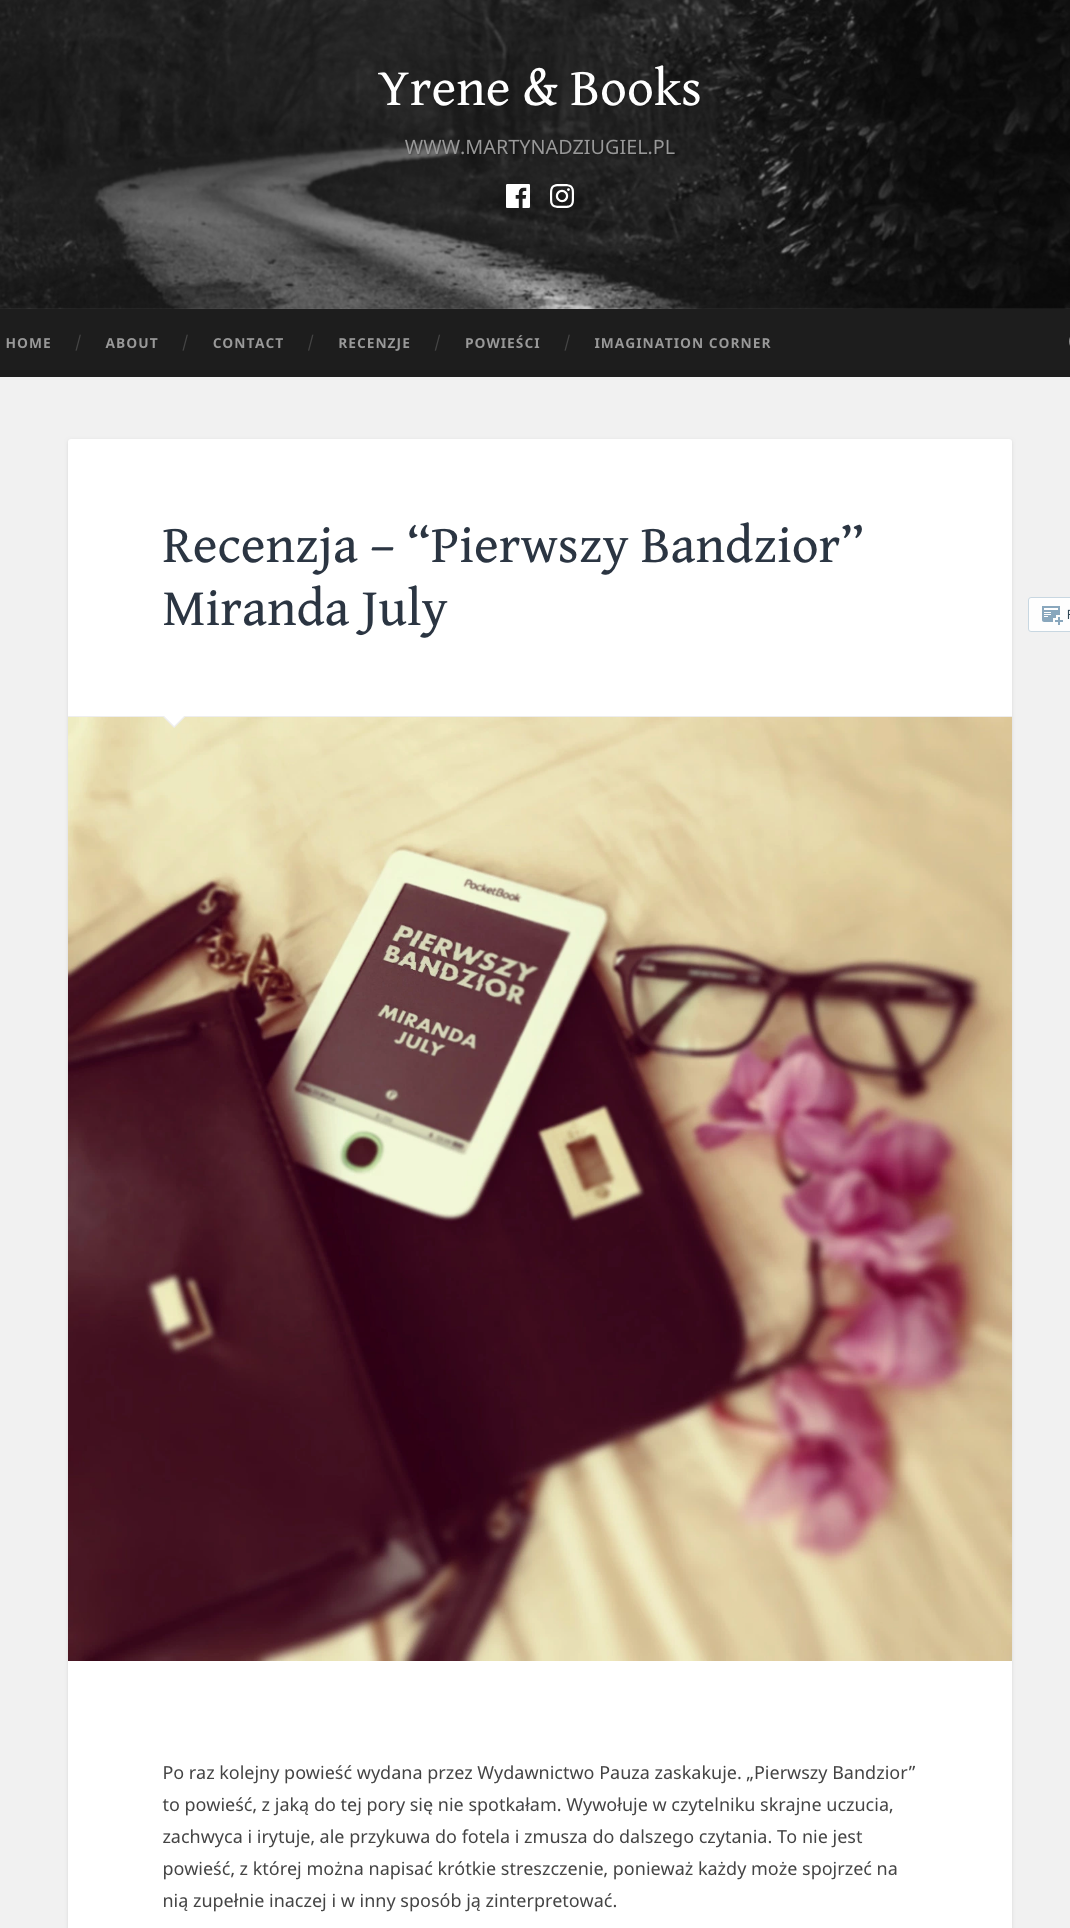 Recenzja – “Pierwszy Bandzior” Miranda July – Yrene Books